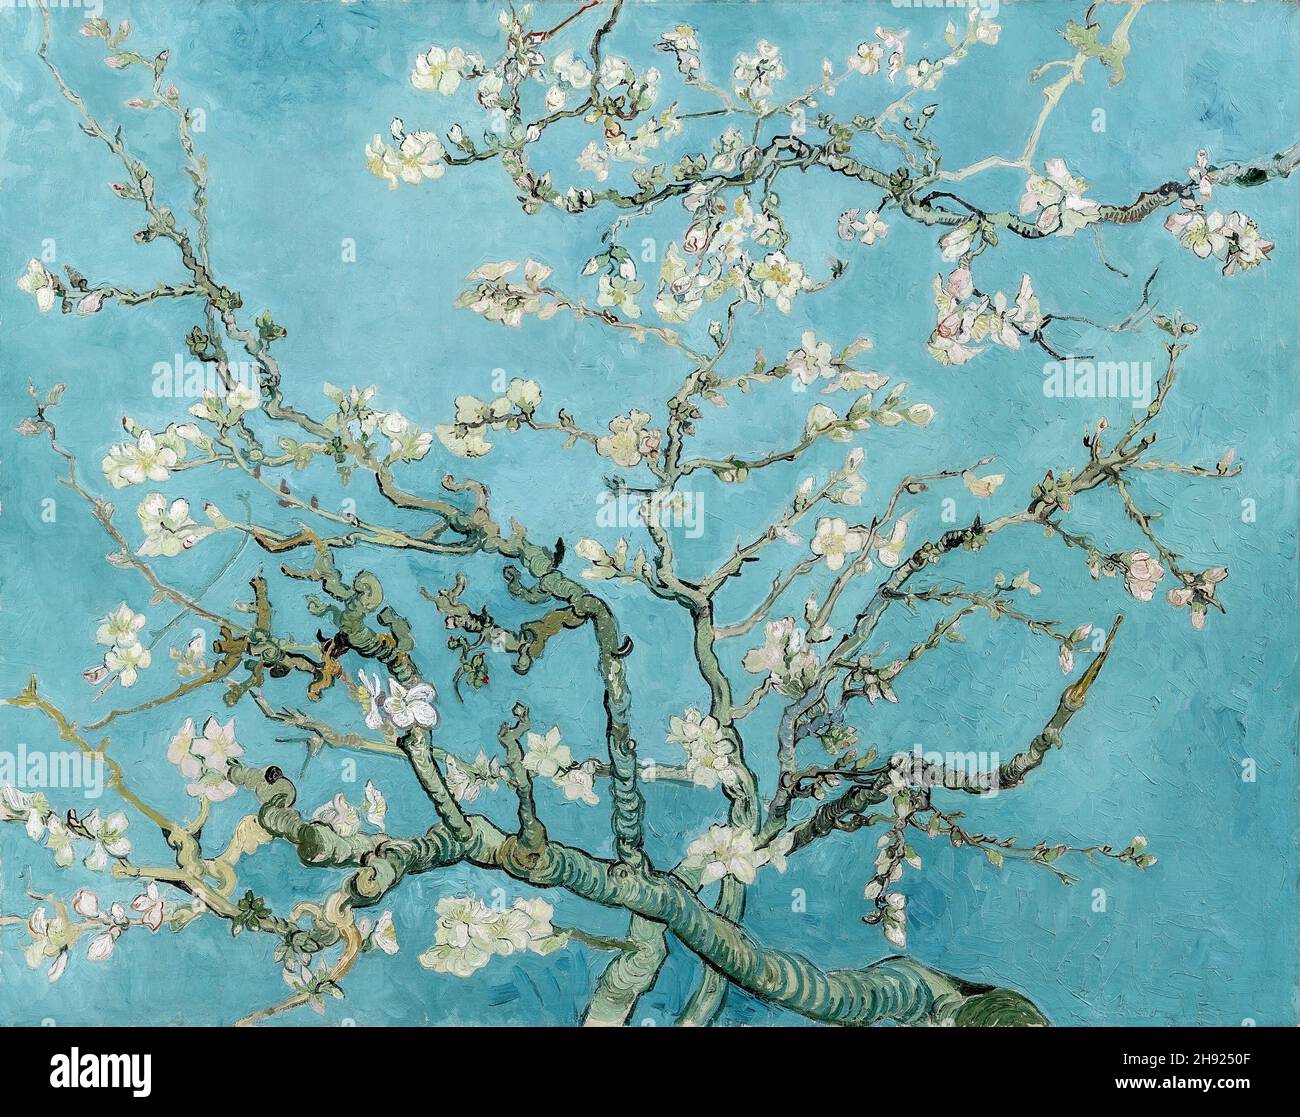 Vincent van Gogh, Almond Blossom, 1890, huile sur toile, Amsterdam,Pays-Bas Banque D'Images